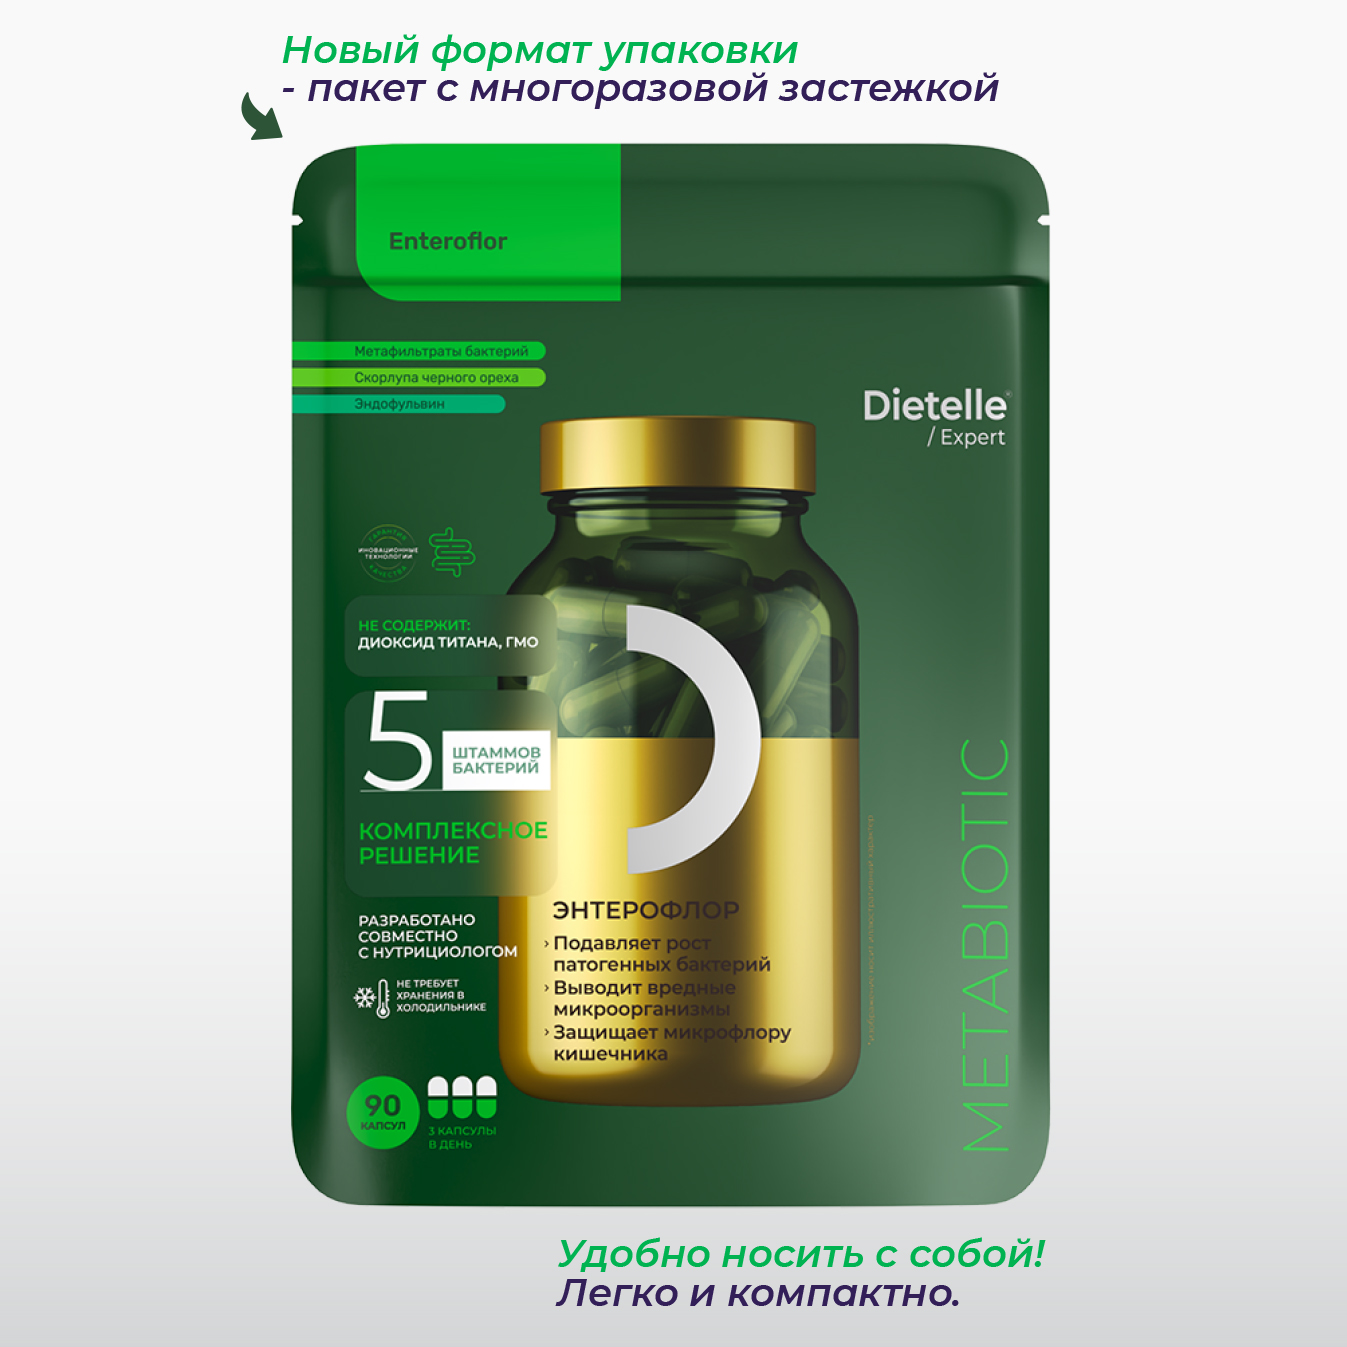 Энтерофлор 600 мг 90 капс Dietelle метабиотик и сорбент для микрофлоры кишечника и здоровья ЖКТ - фото 1